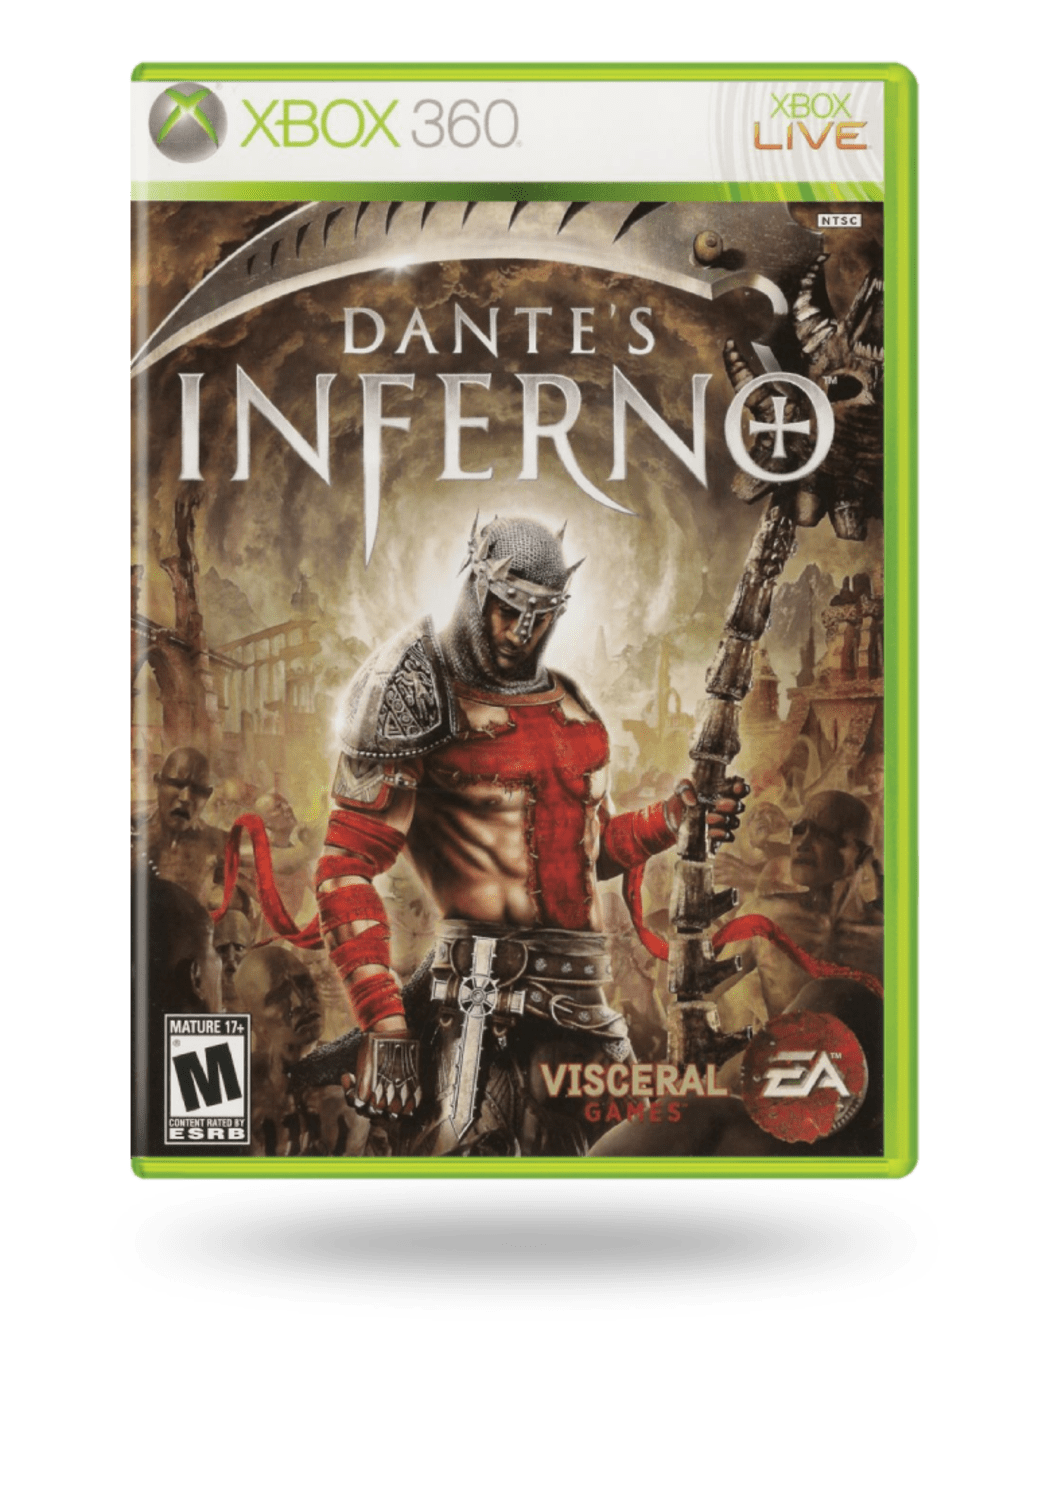 Dante's Inferno - Xbox 360 (Europeu) #1 (Com Detalhe) - Arena